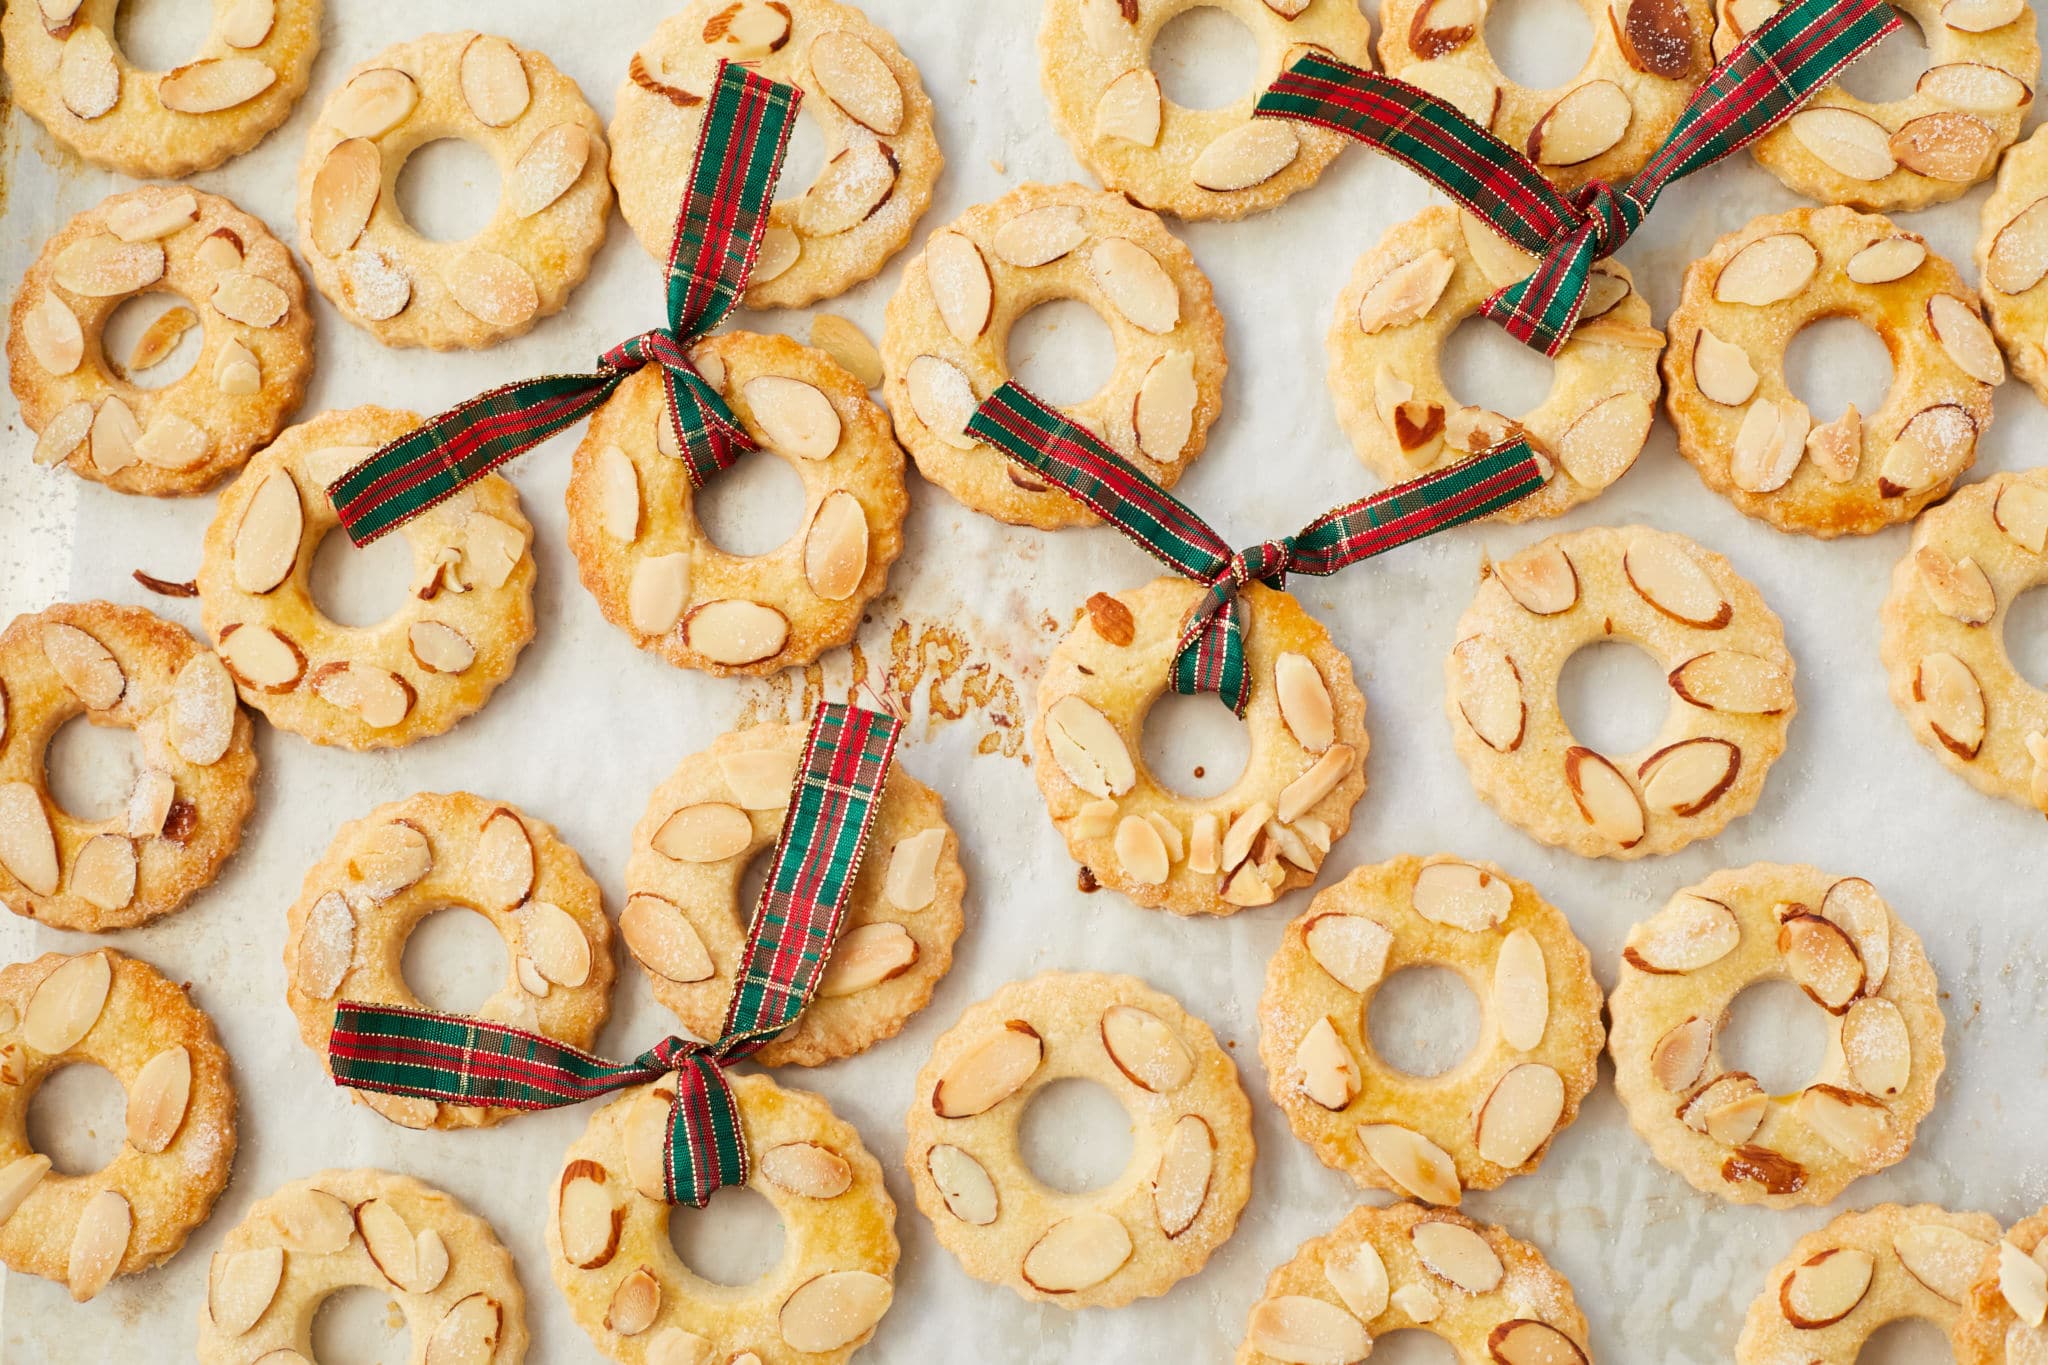 Kerstkransjes cookies spread out on a baking sheet.